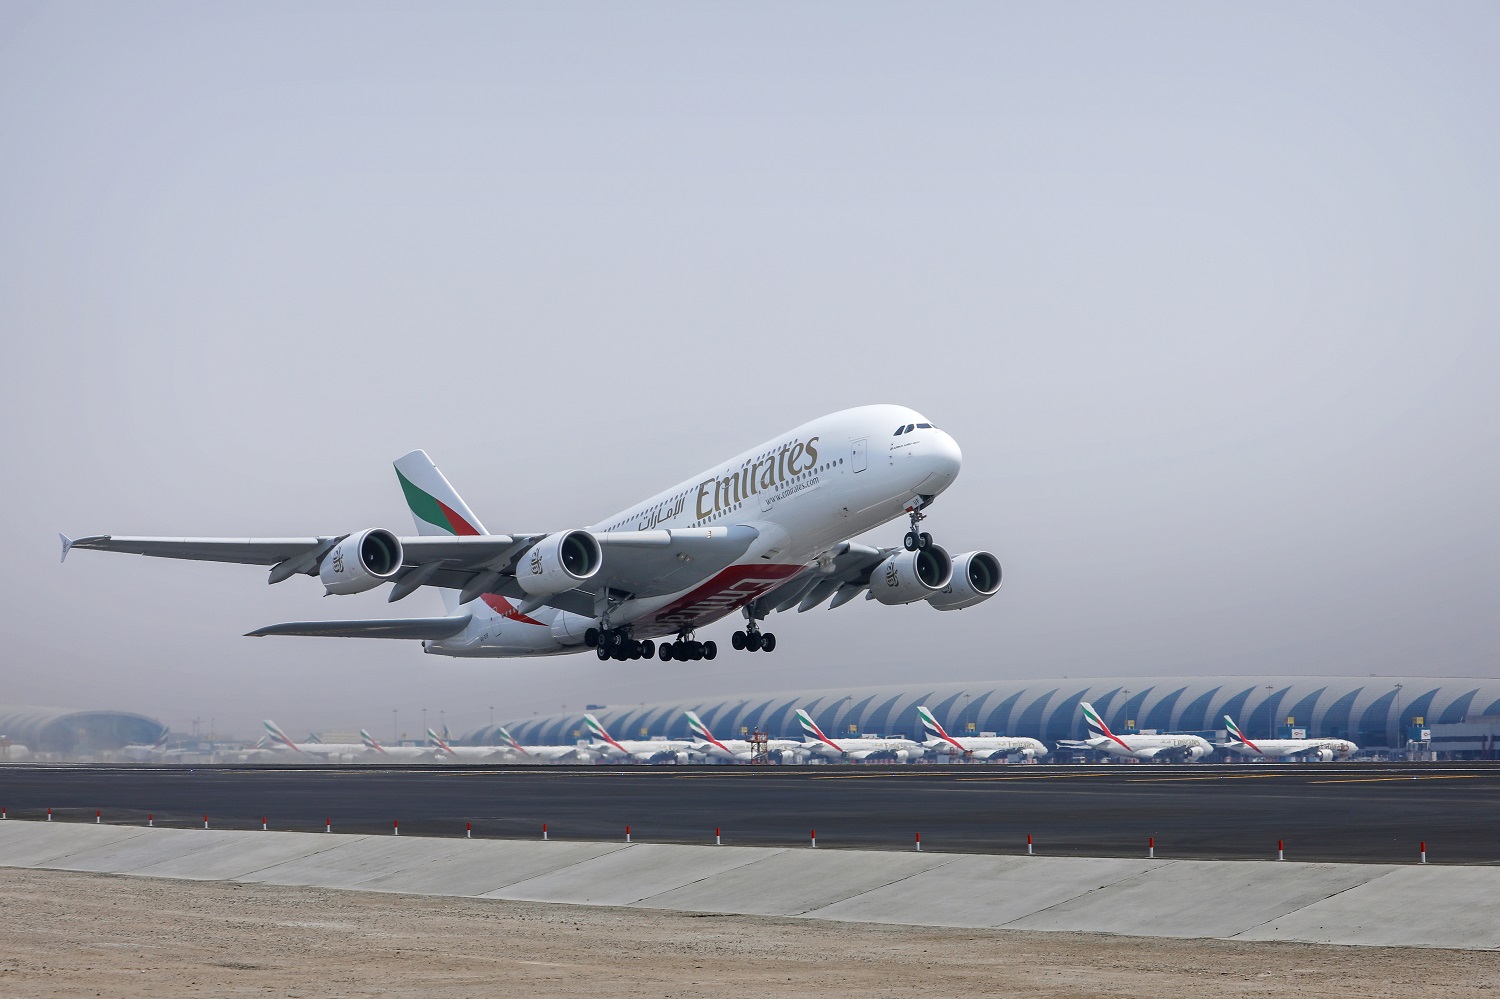 مطارات دبي تعلن عن الانتهاء من مشروع تجديد المدرج الشمالي في مطار دبي الدولي DXB بنجاح كبير